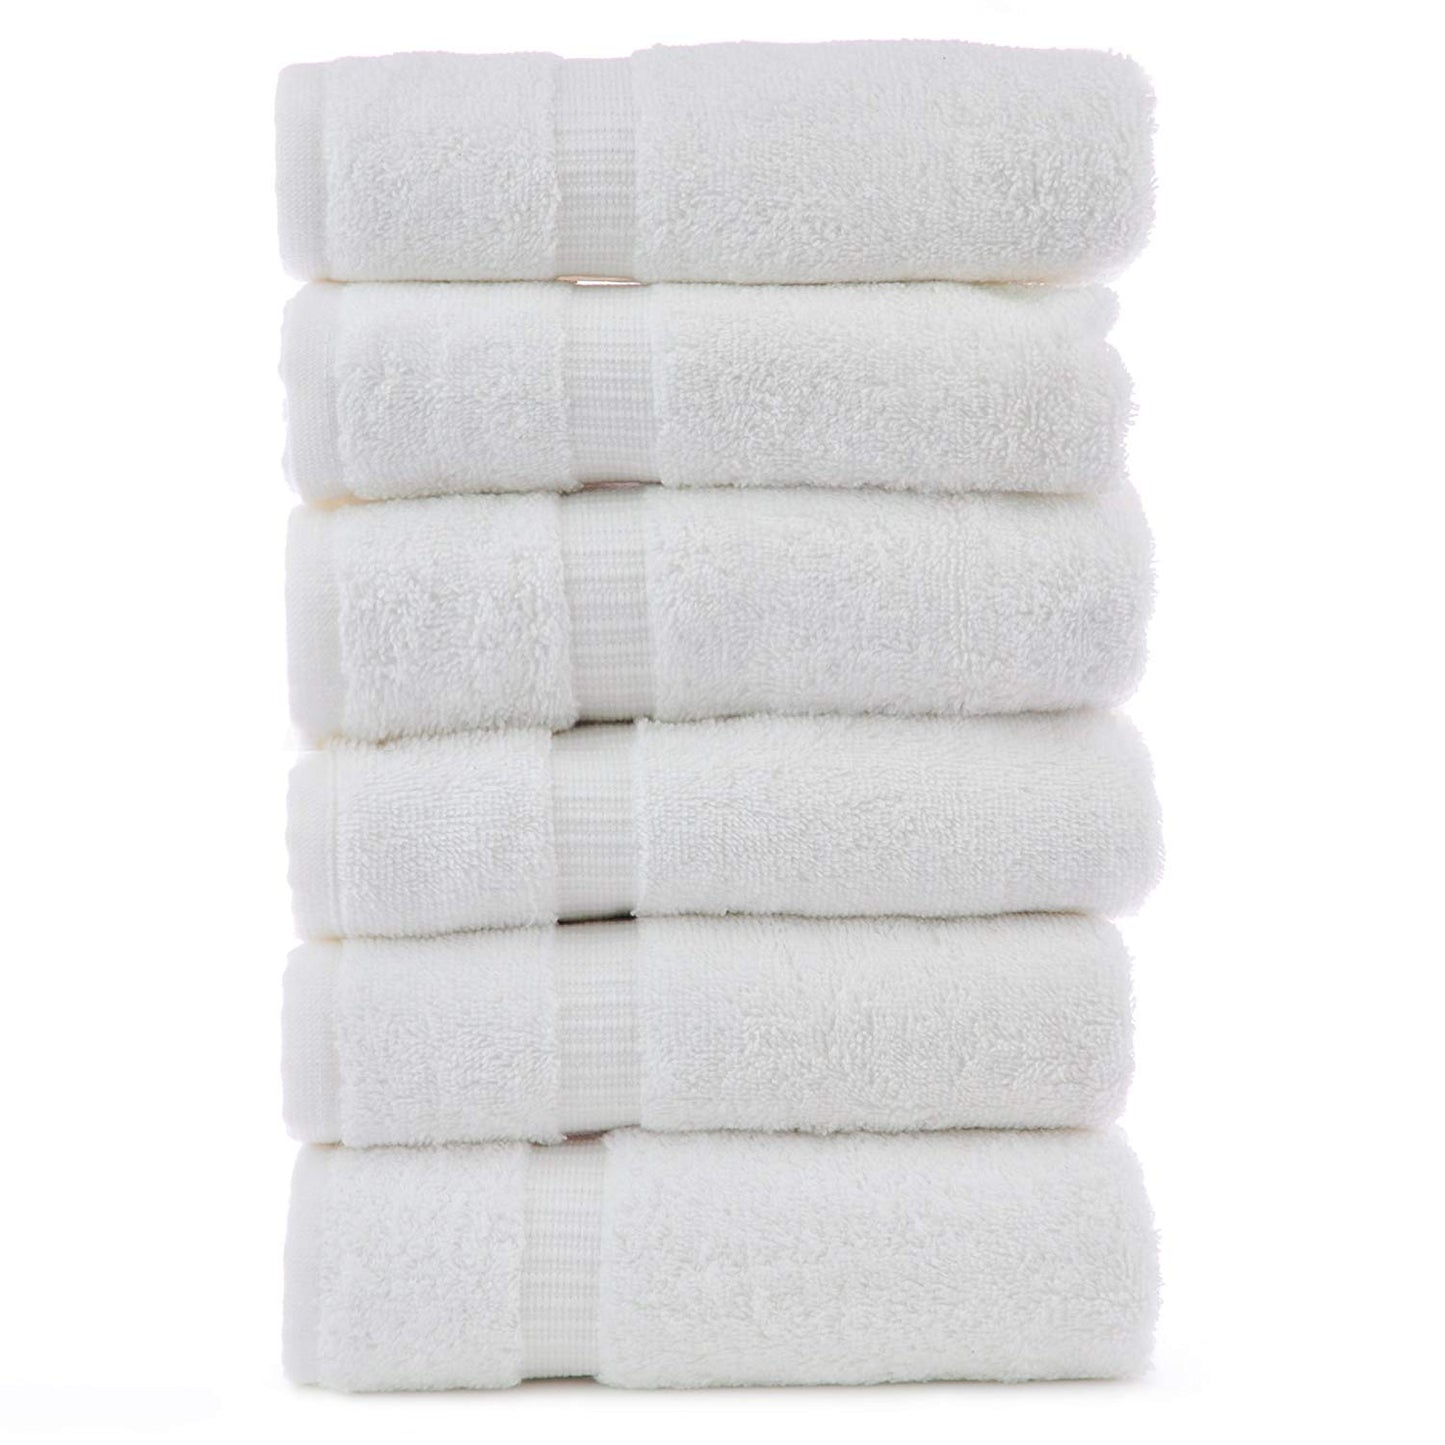 Premium White Spa Towel 27" x 60" - SpaSupply